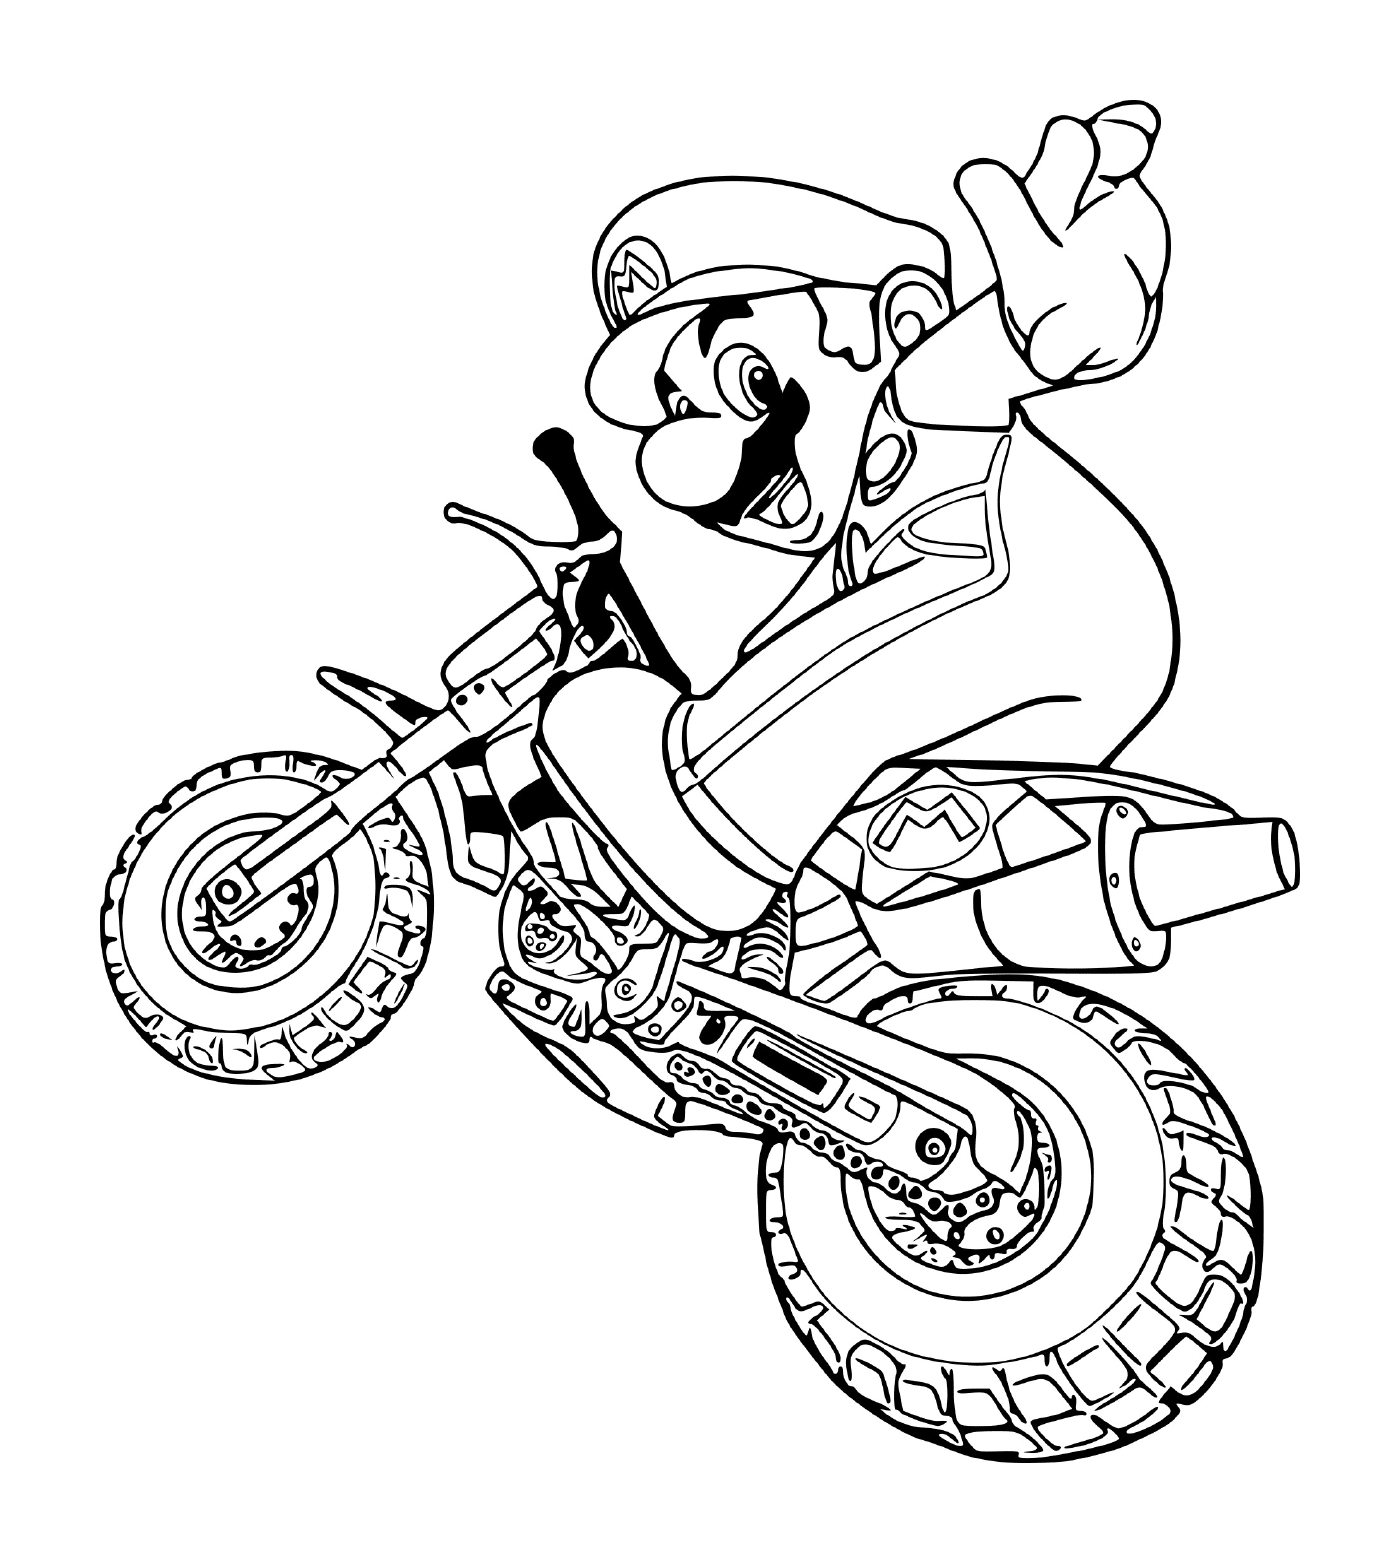  Mario em modo de motocicleta, em uma motocicleta 